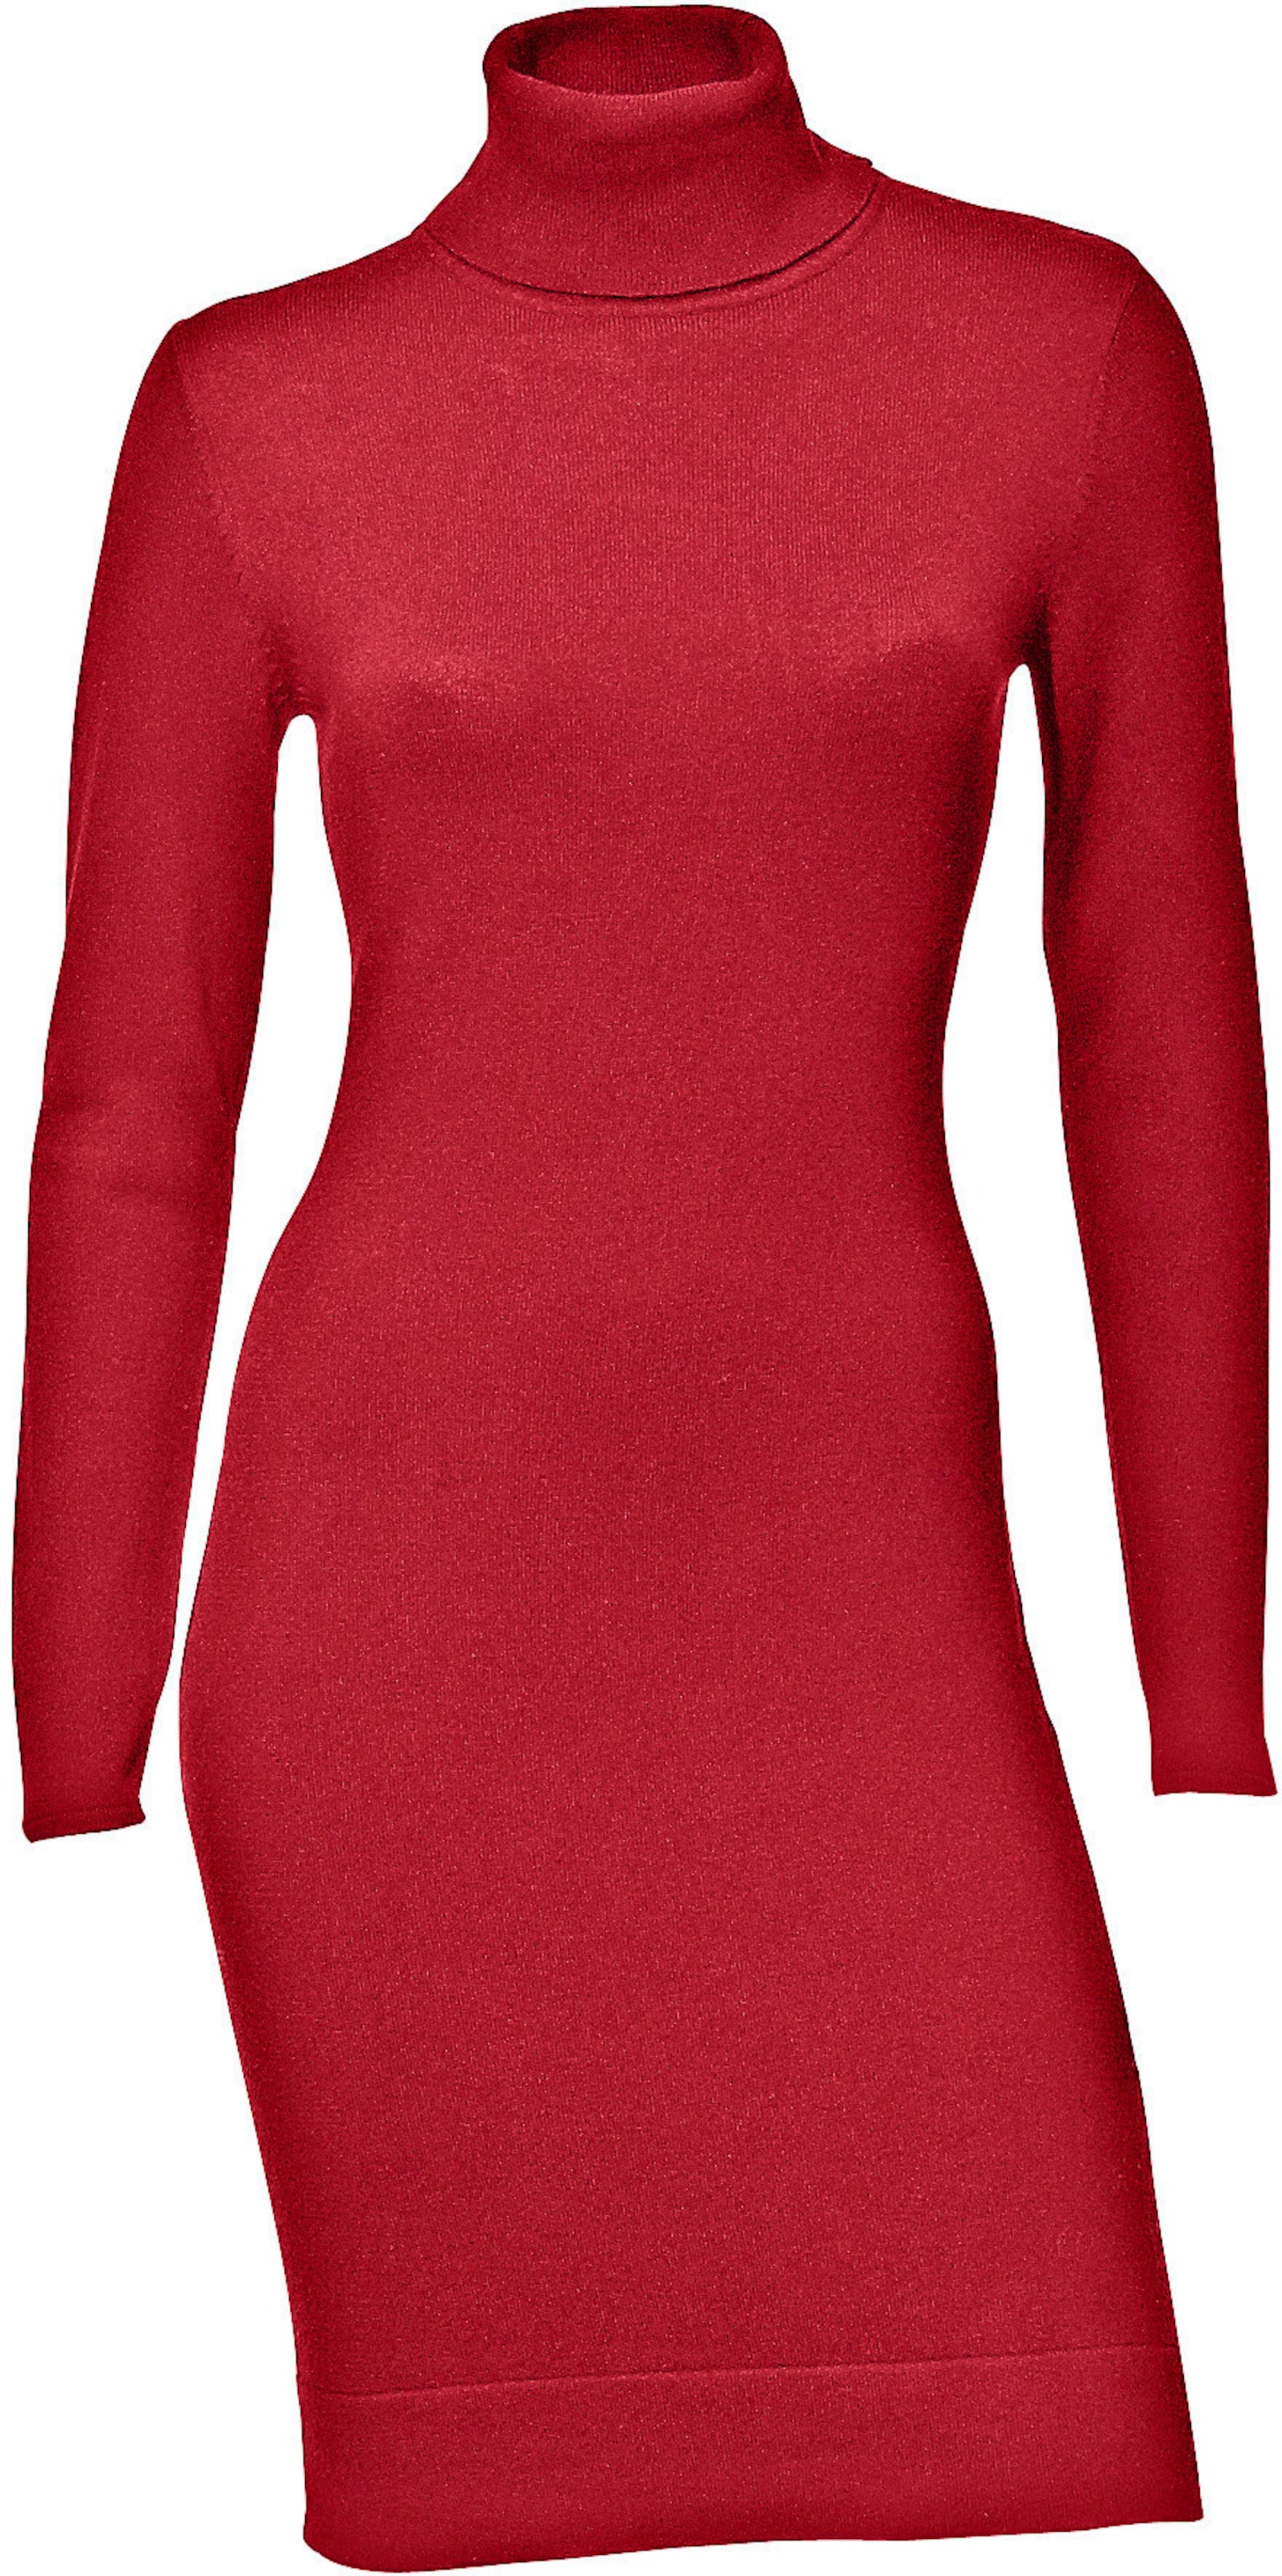 Rollkragen Kleid günstig Kaufen-Rollkragen-Kleid in rot von heine. Rollkragen-Kleid in rot von heine <![CDATA[Rollkragen-Kleid Feminines Rollistrickkleid mit Langarm. Trageangenehme Strickqualität. Knieumspielendes Kleid mit Rippenstrickabschlüssen. Perfekt für schöne Herbsttage.]]>